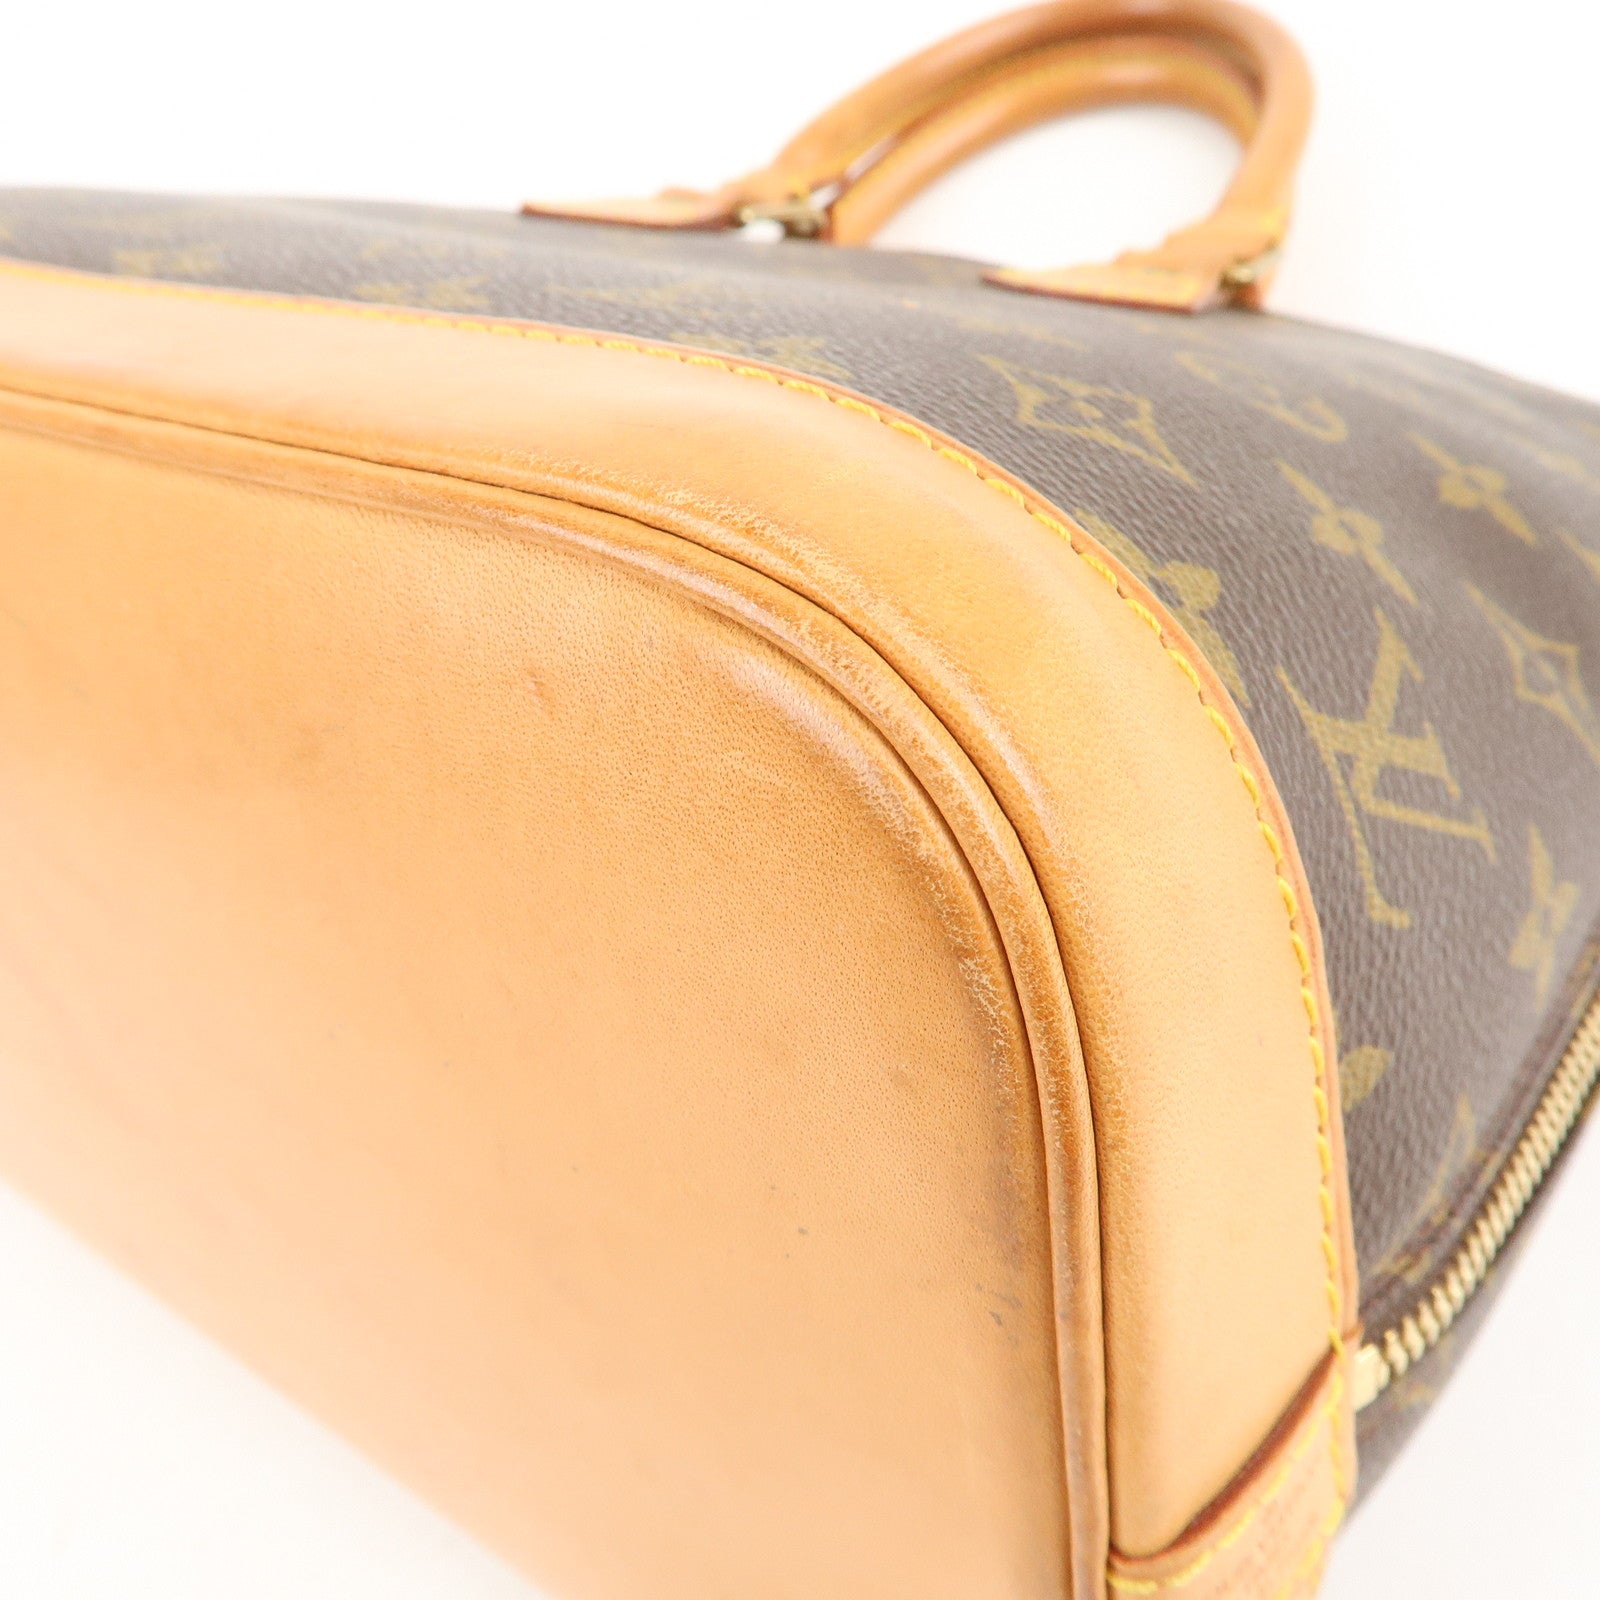 Authentic Louis Vuitton Monogram Alma Hand Bag Purse M51130 LV